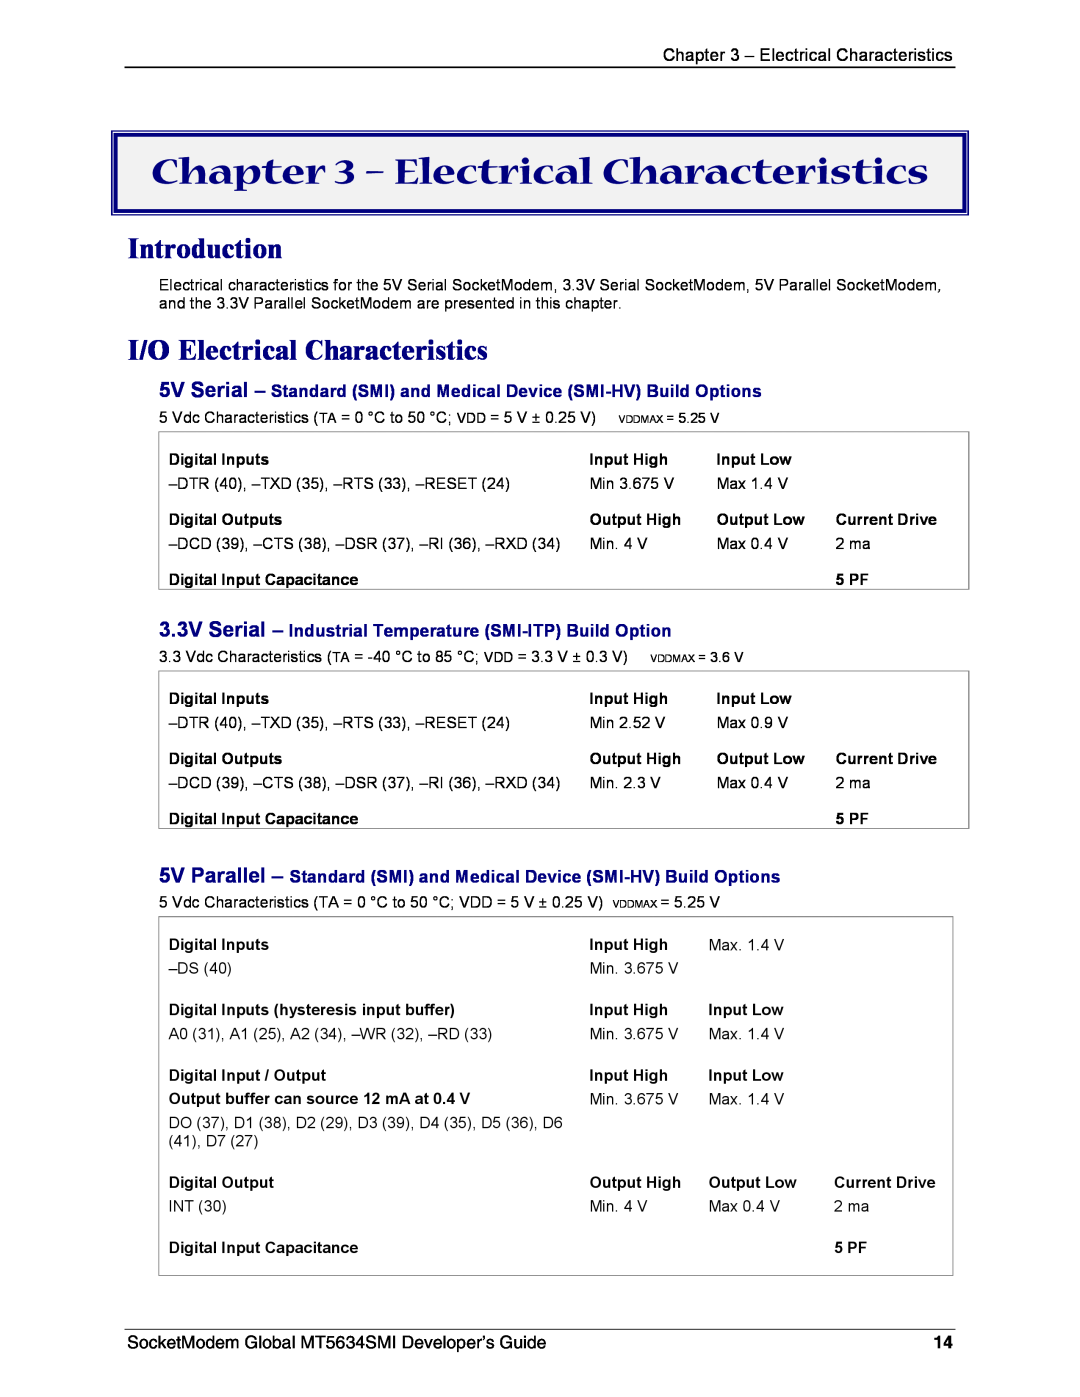 Technics MT5634SMI-92 manual I/O Electrical Characteristics, 3.3V Serial - Industrial Temperature SMI-ITP Build Option 